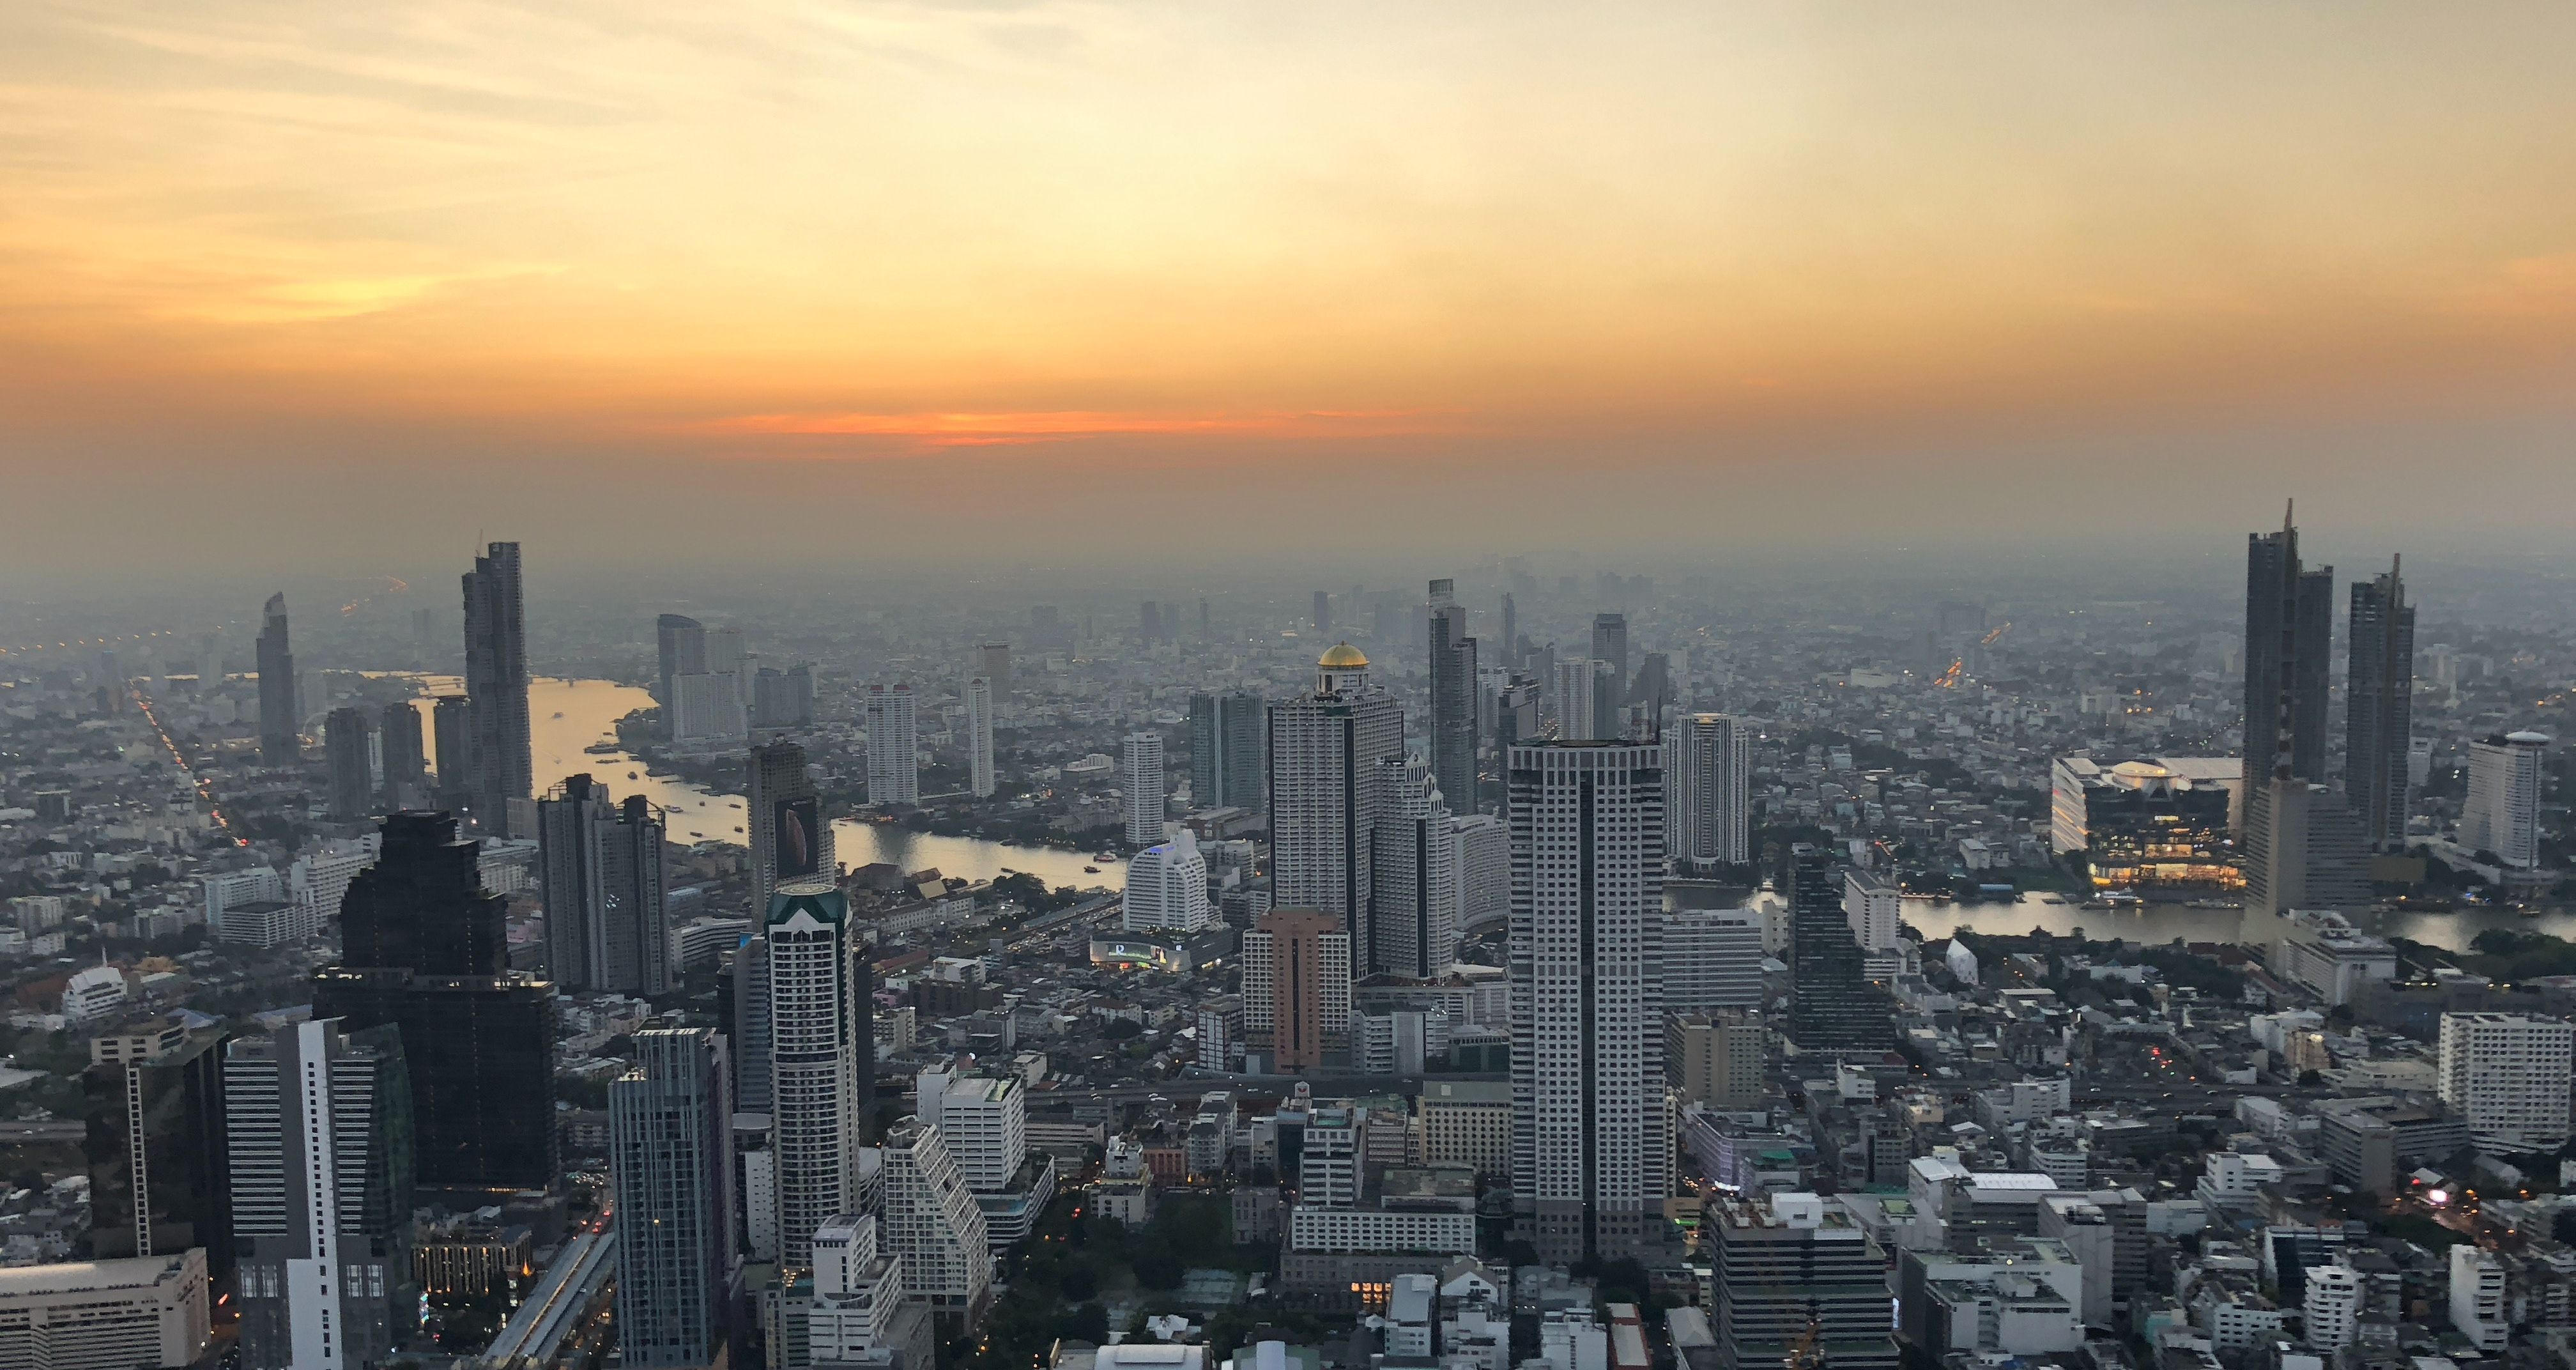 Bangkok in February